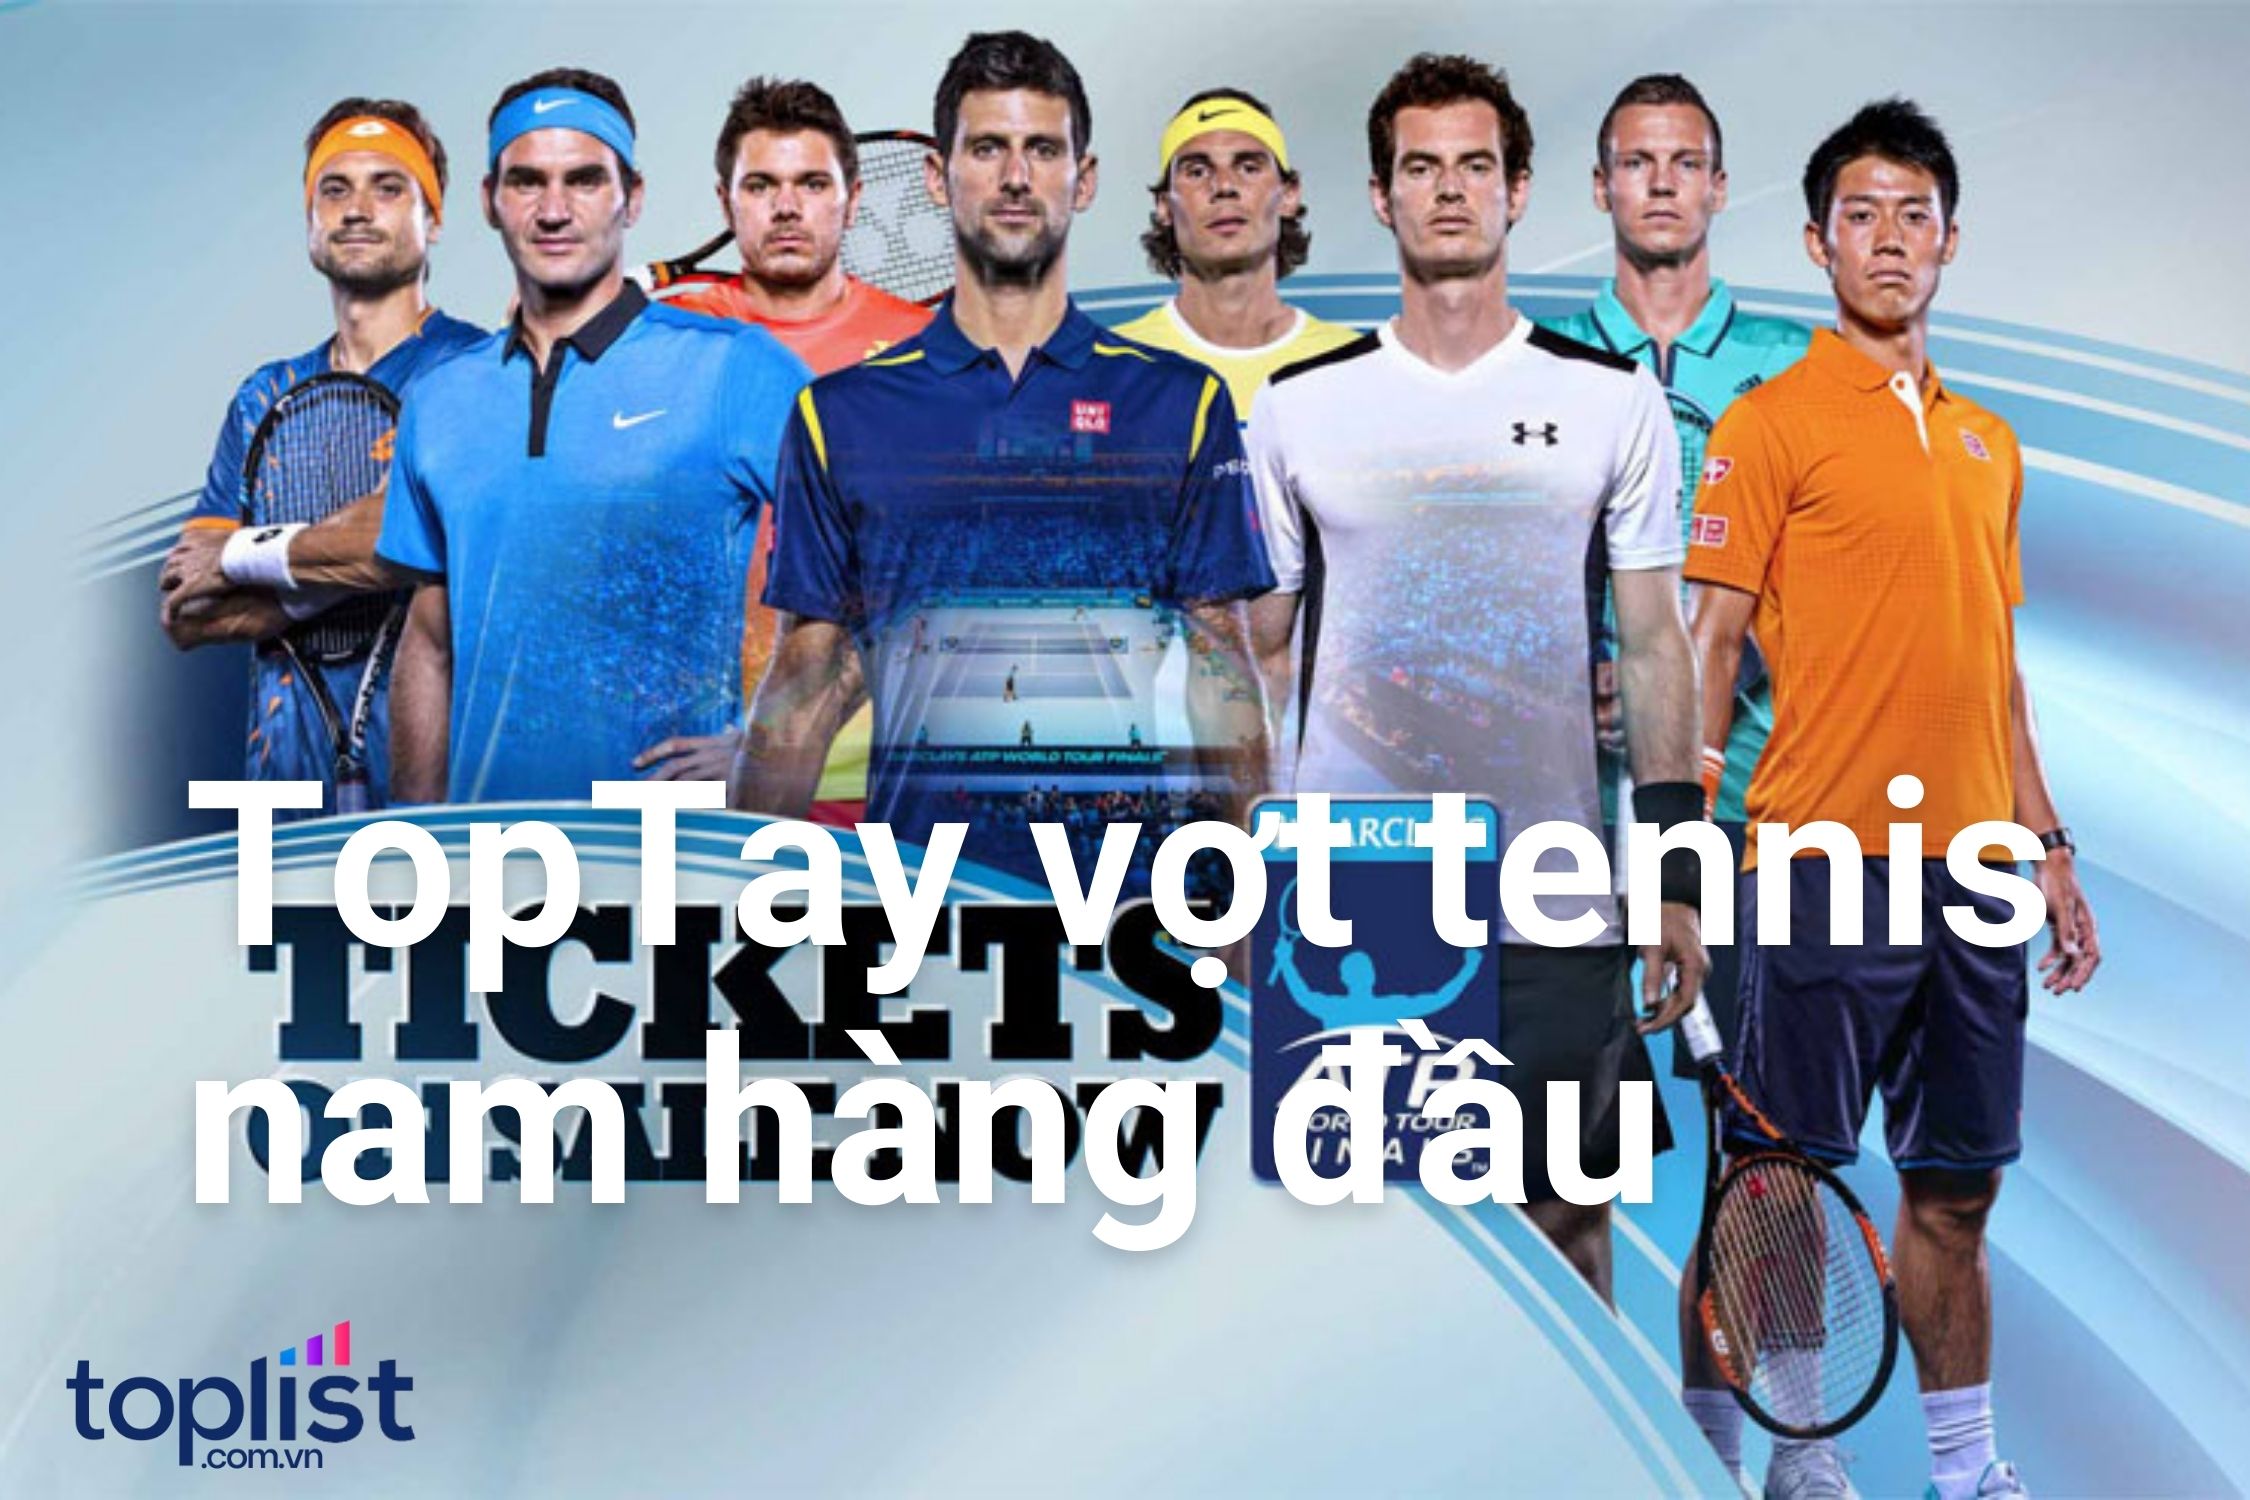 Top 10 Tay vợt tennis nam hàng đầu châu lục